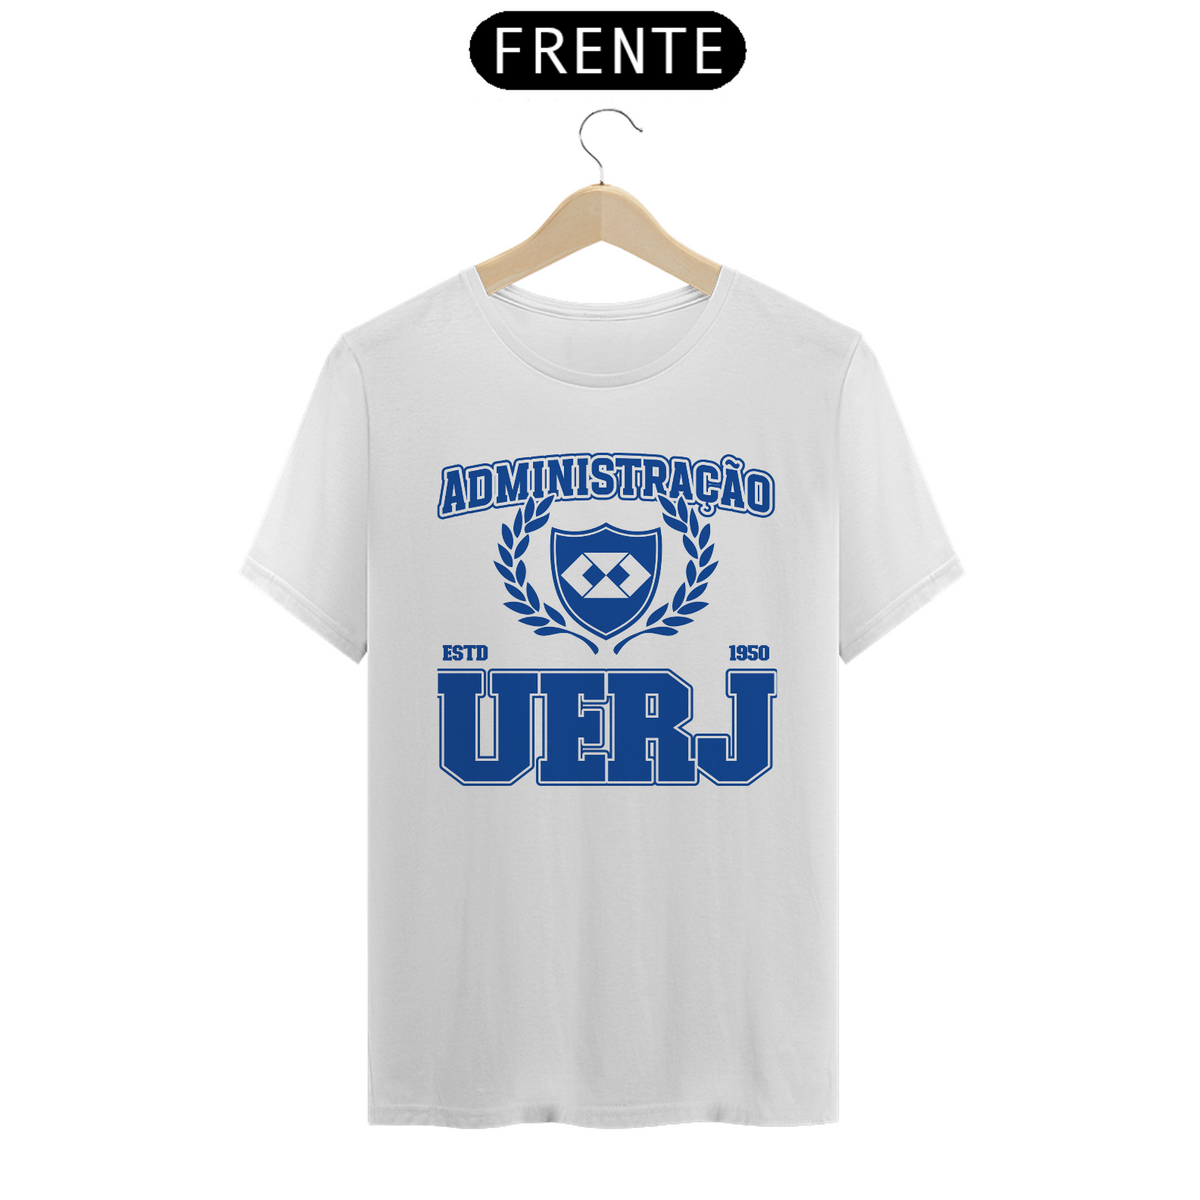 Nome do produto: UniVerso- Administração Uerj